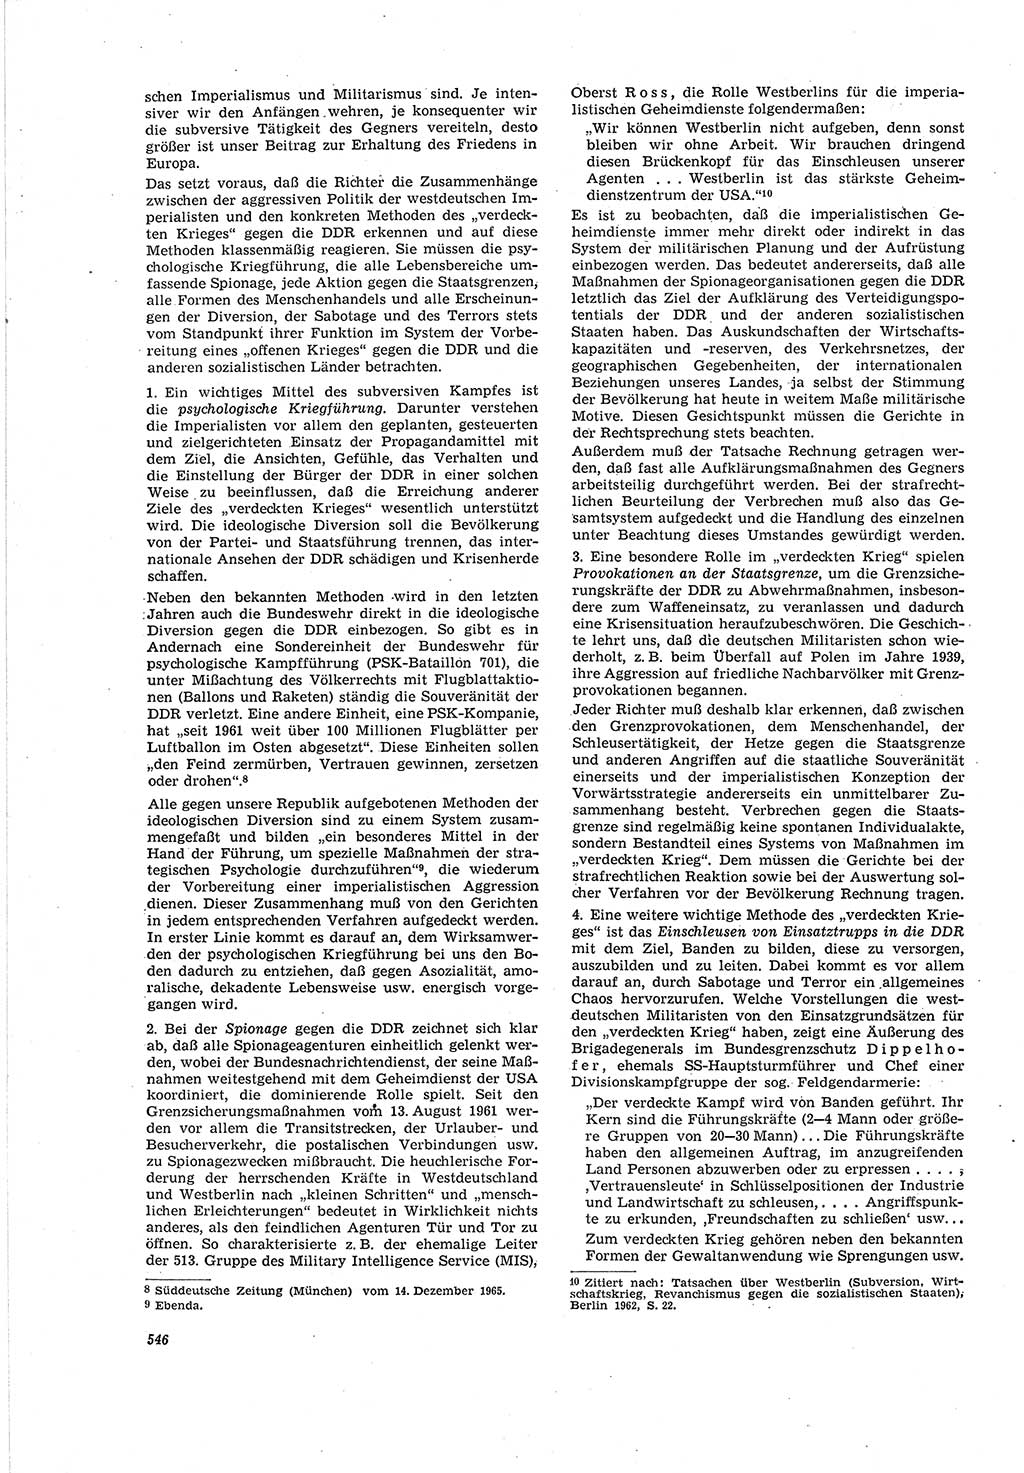 Neue Justiz (NJ), Zeitschrift für Recht und Rechtswissenschaft [Deutsche Demokratische Republik (DDR)], 20. Jahrgang 1966, Seite 546 (NJ DDR 1966, S. 546)